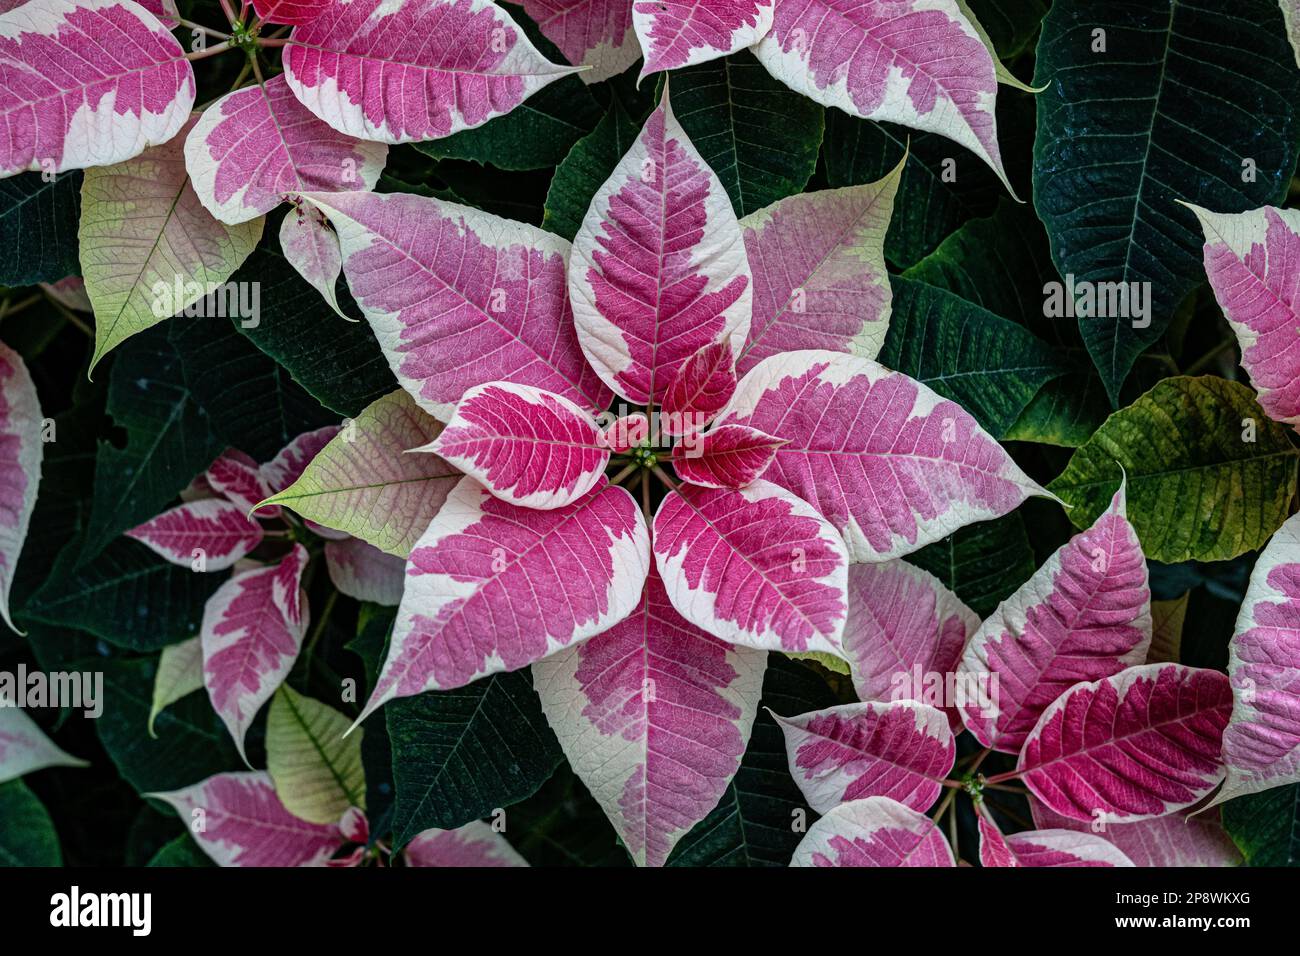 Fiore rosa e bianco, foglie verdi e pistillo verde al centro Foto Stock